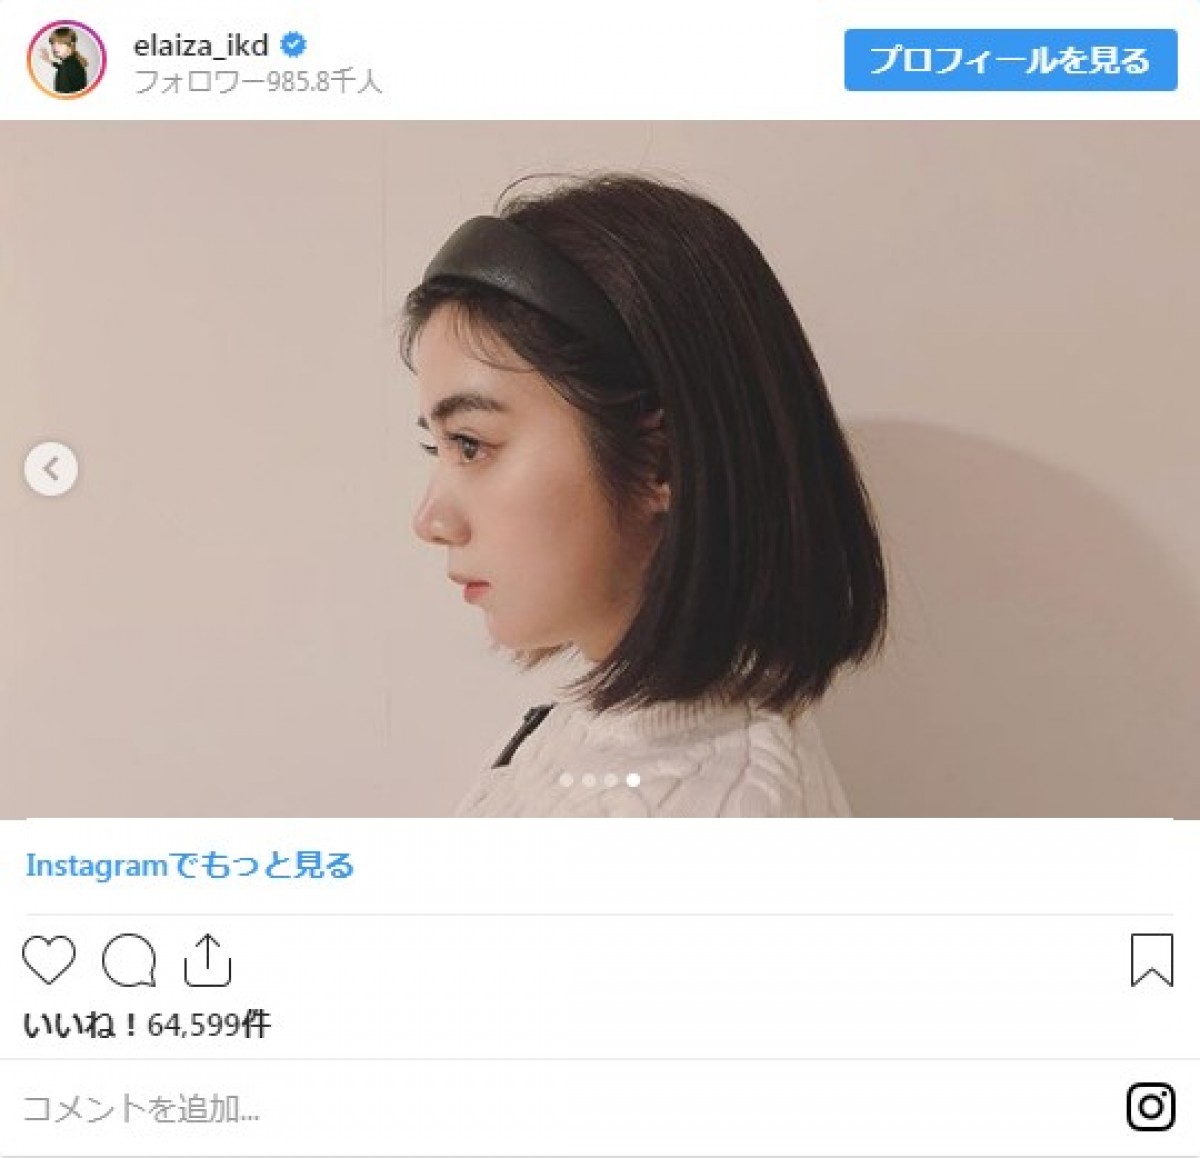 池田エライザ、貴重な“でこっぱち”ショット公開 「どんな髪型でも美人」と反響